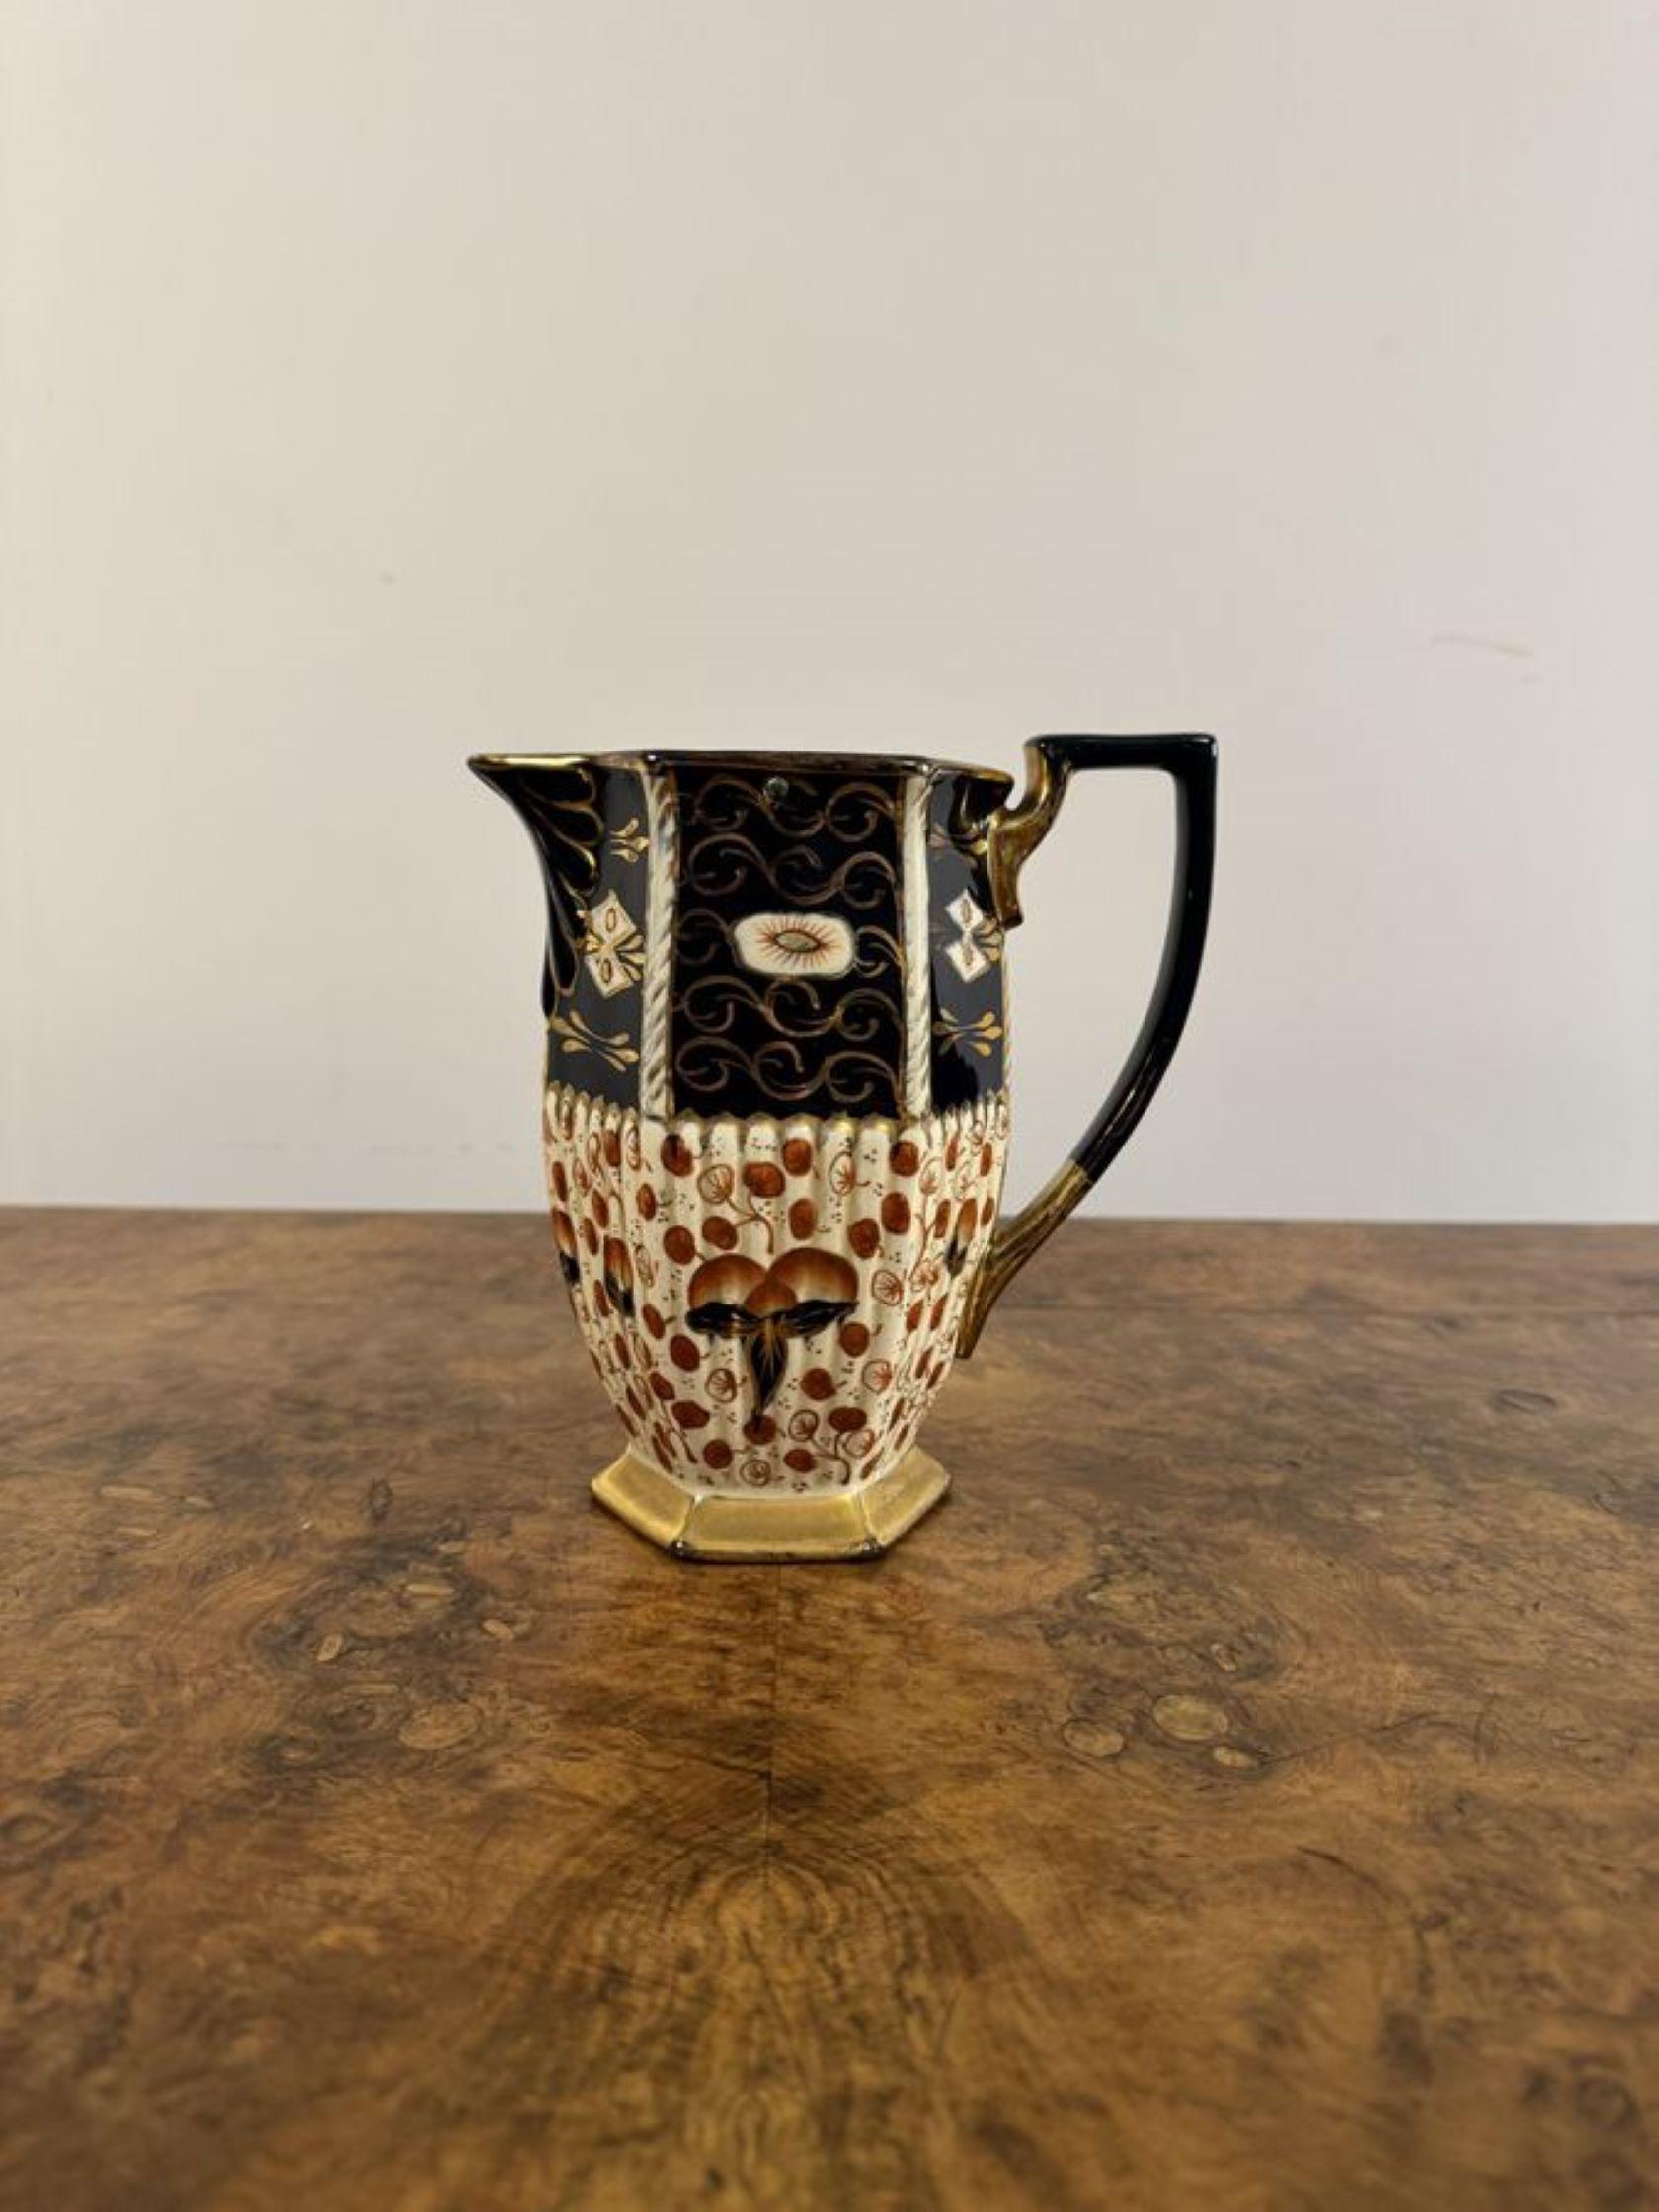 Charmant service à thé victorien Royal Davenport trois pièces, composé d'une belle théière avec son support d'origine, d'un pot à eau chaude et d'un sucrier dans une magnifique décoration colorée en bleu, rouge, blanc et or.

D. 1880